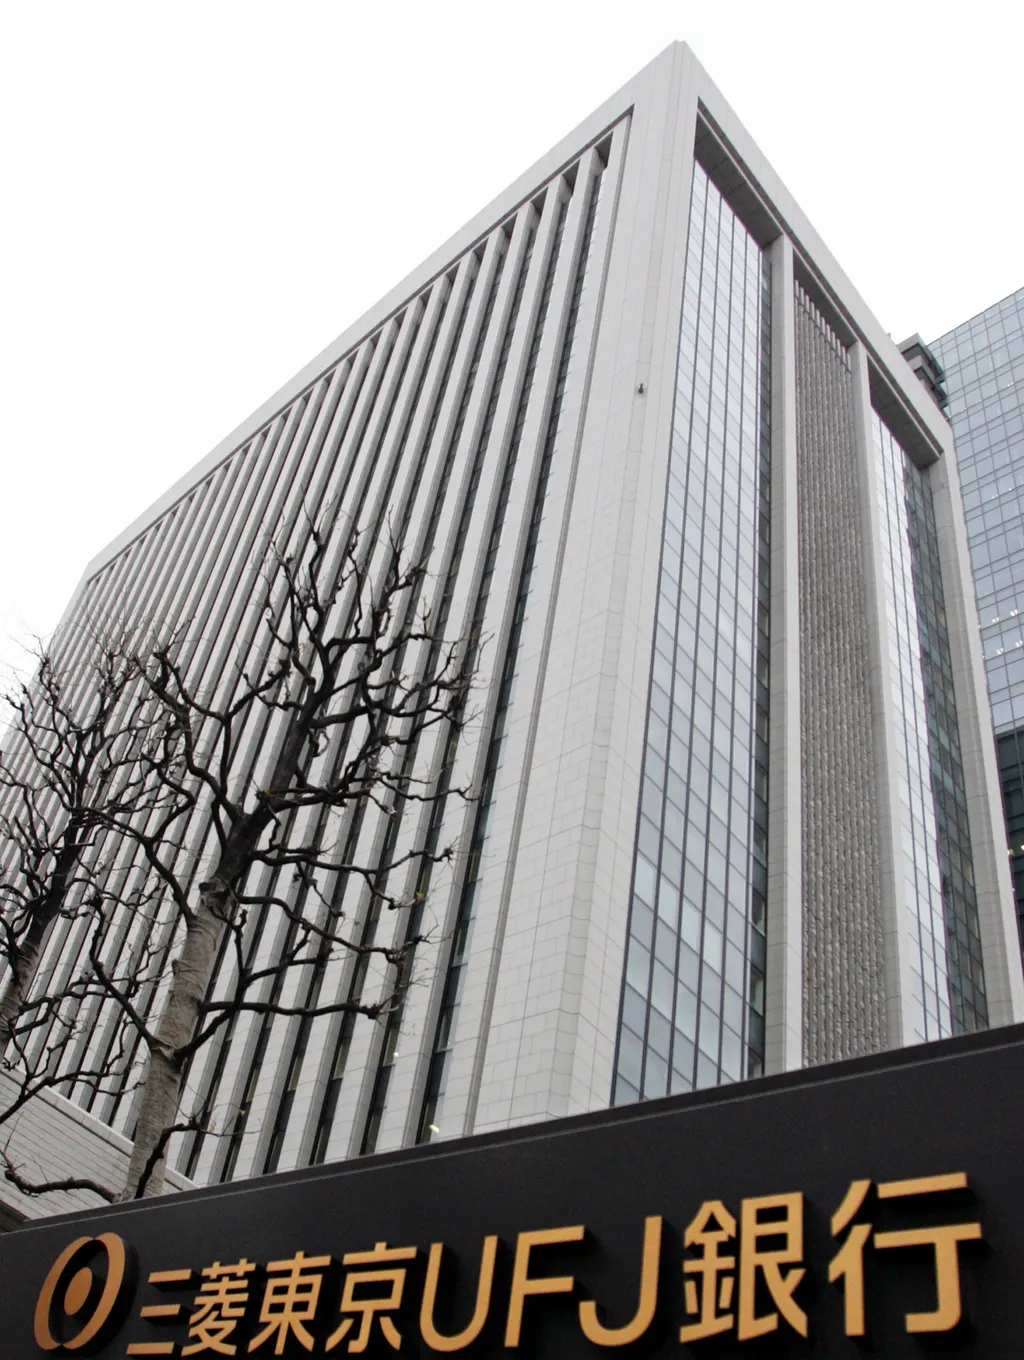 Ez a világ 15 legerősebb bankja, Mitsubishi UFJ Financial Group 